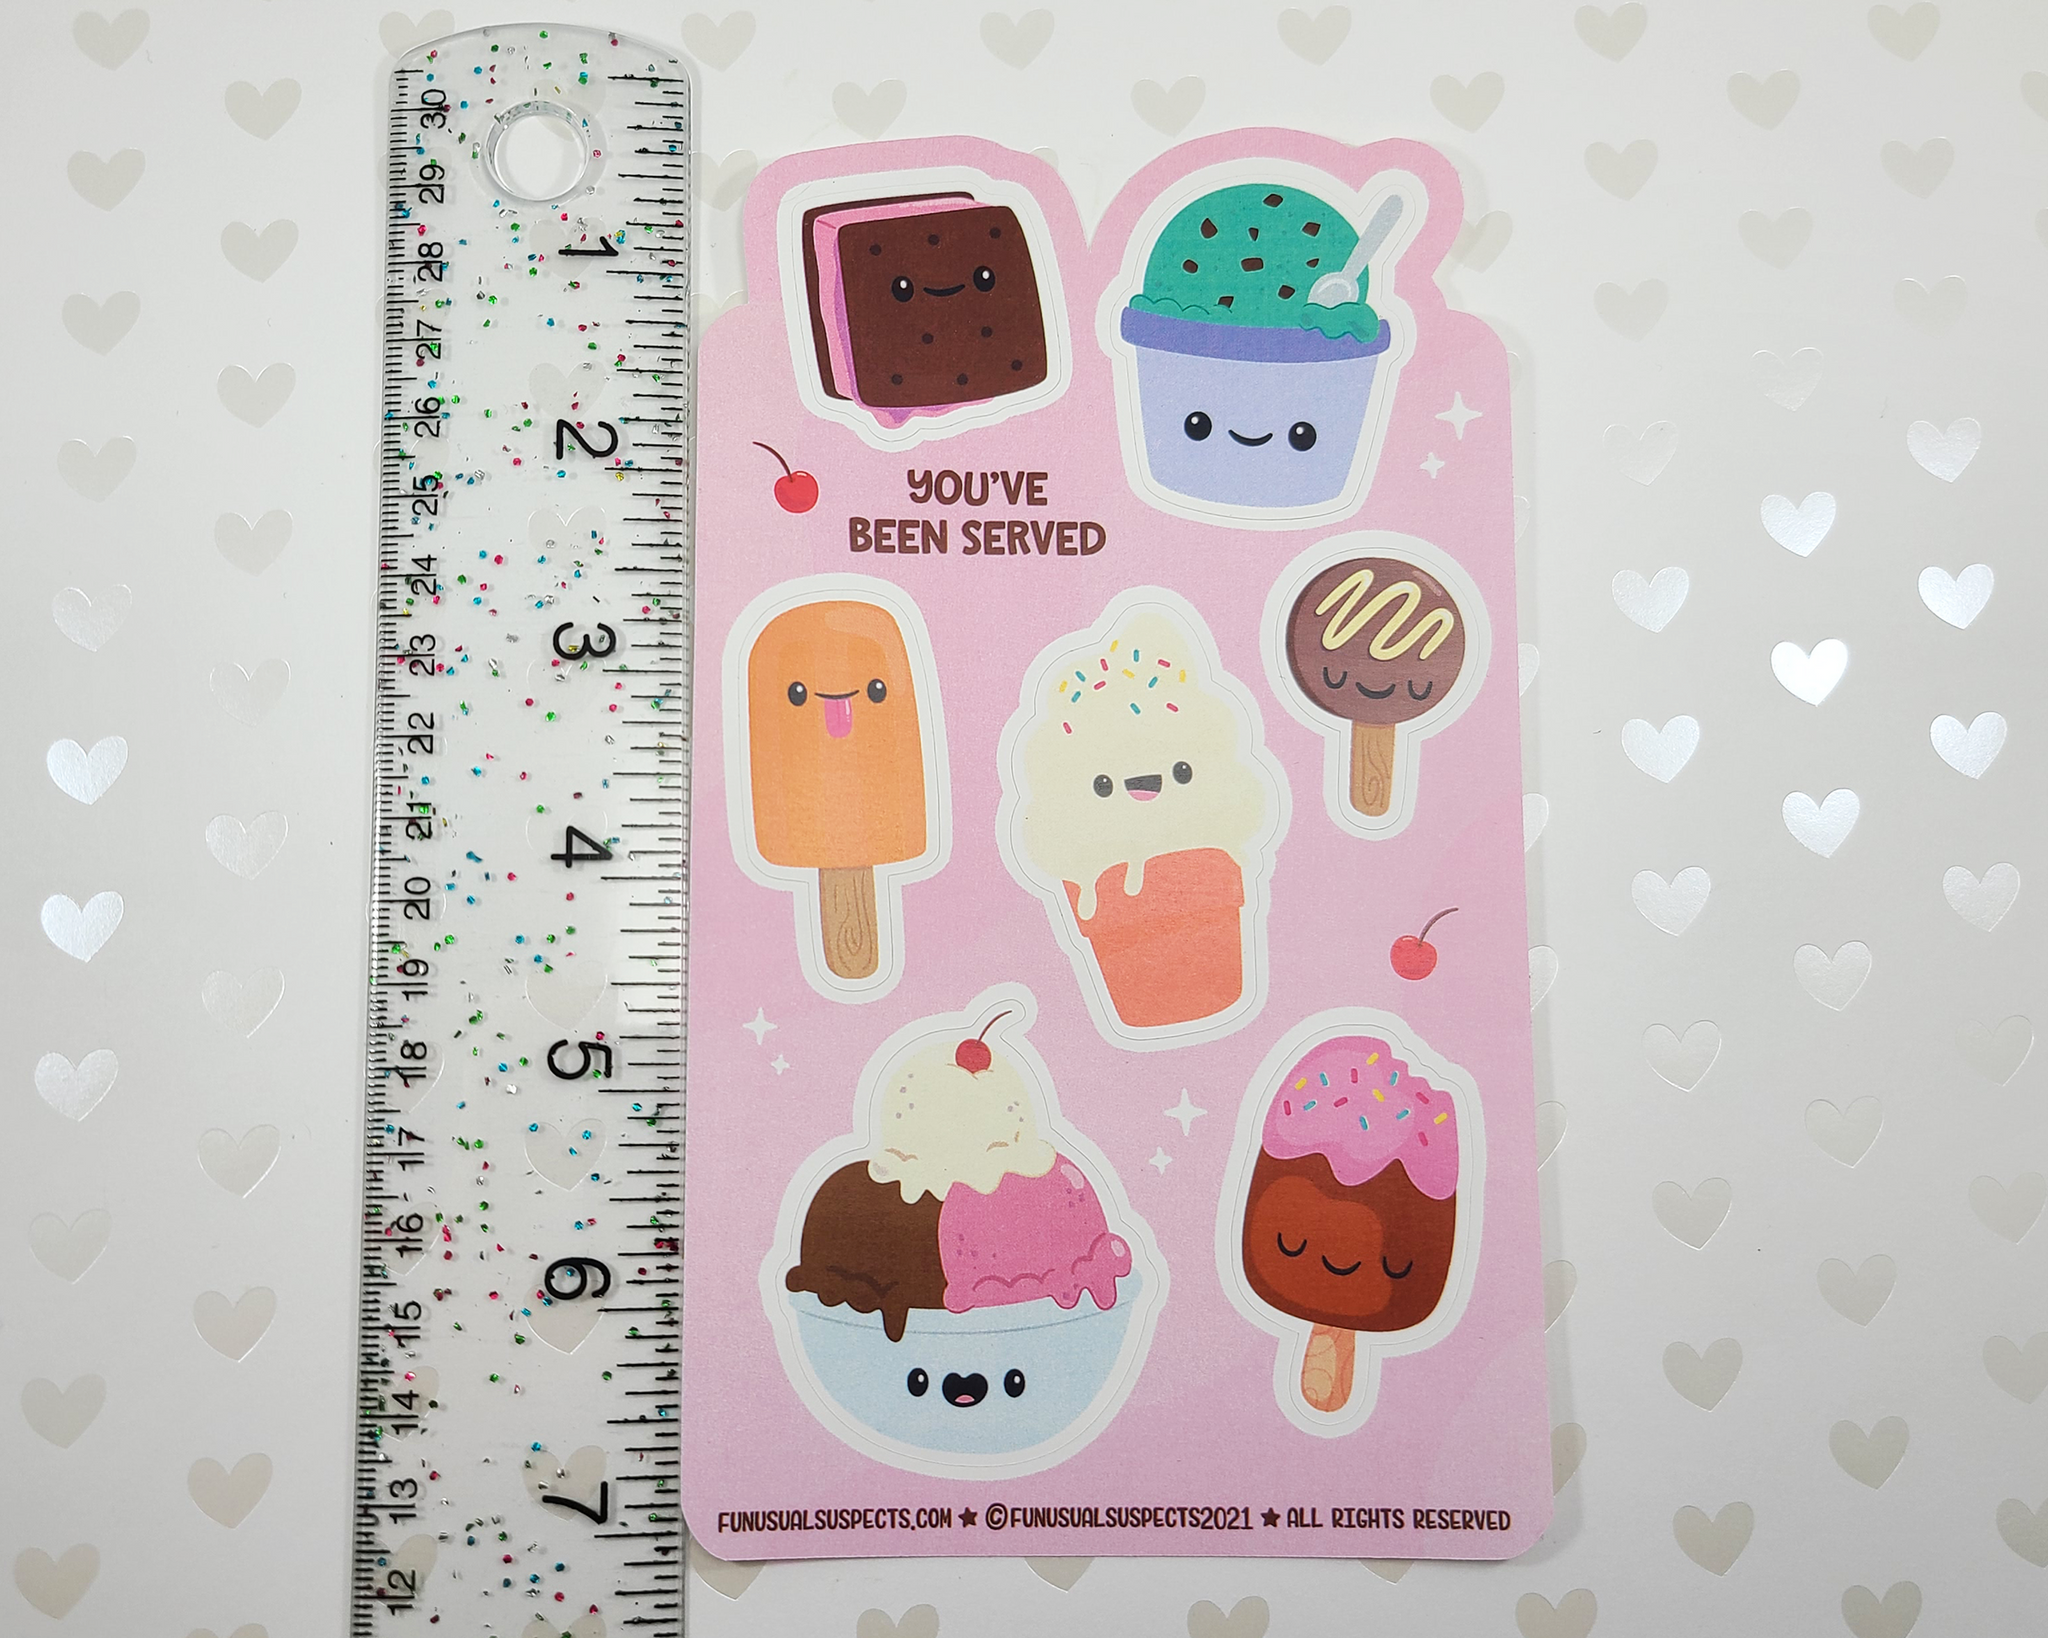 Ice Cream Sticker Sheet